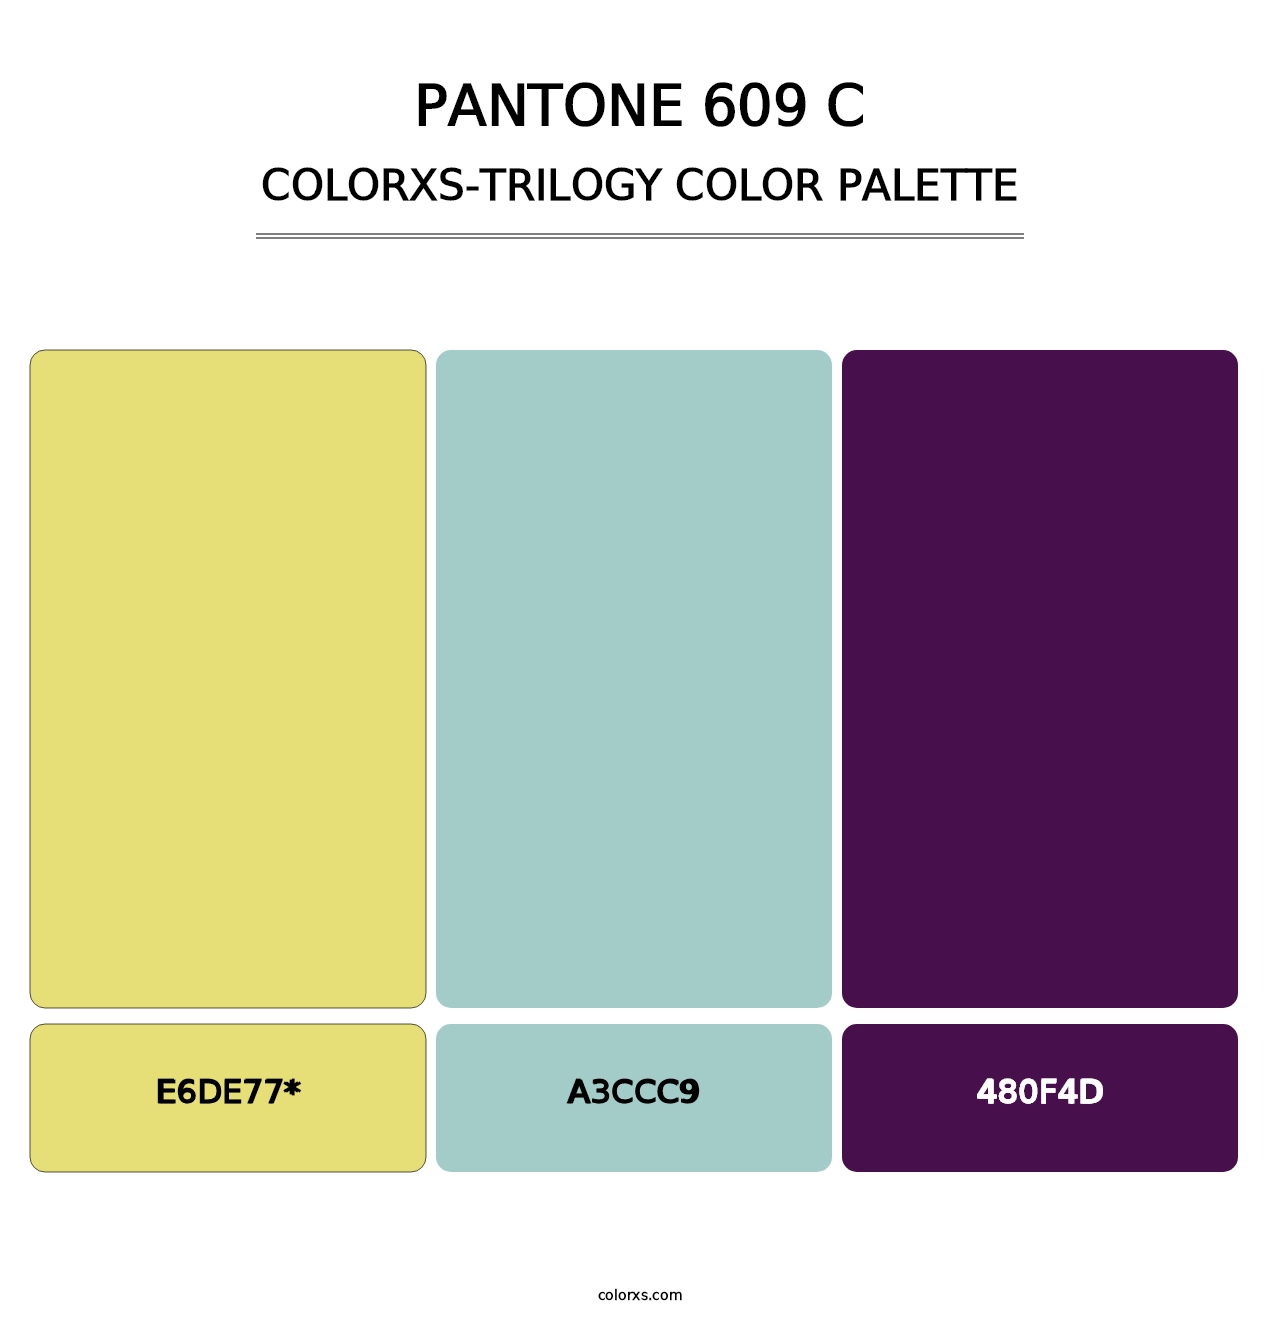 PANTONE 609 C - Colorxs Trilogy Palette